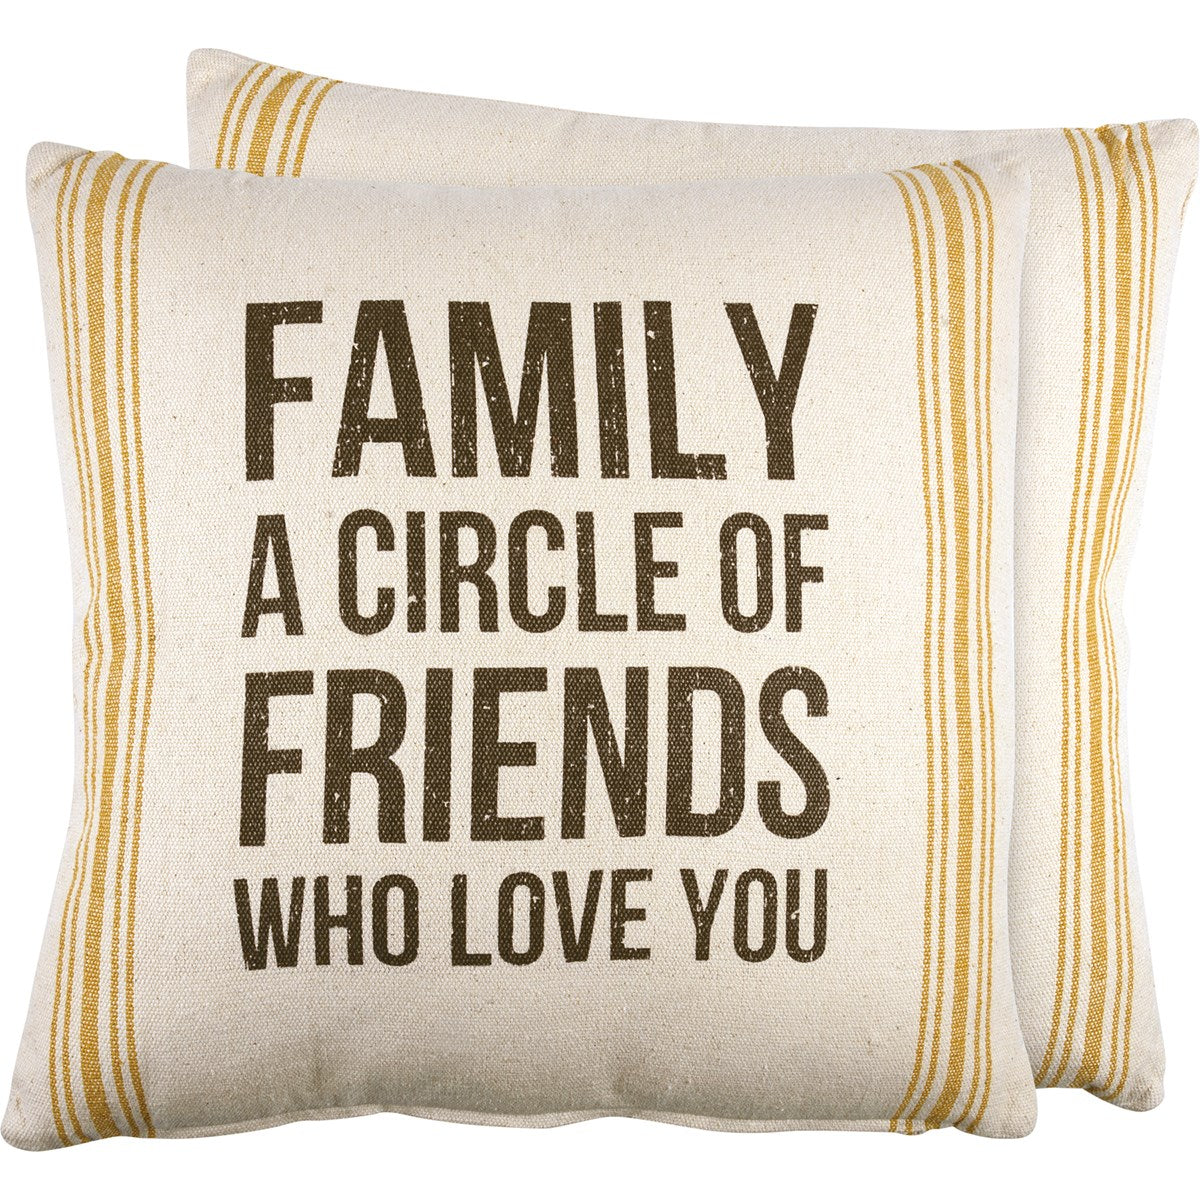 20" Circle Of Friends Linen Pillow